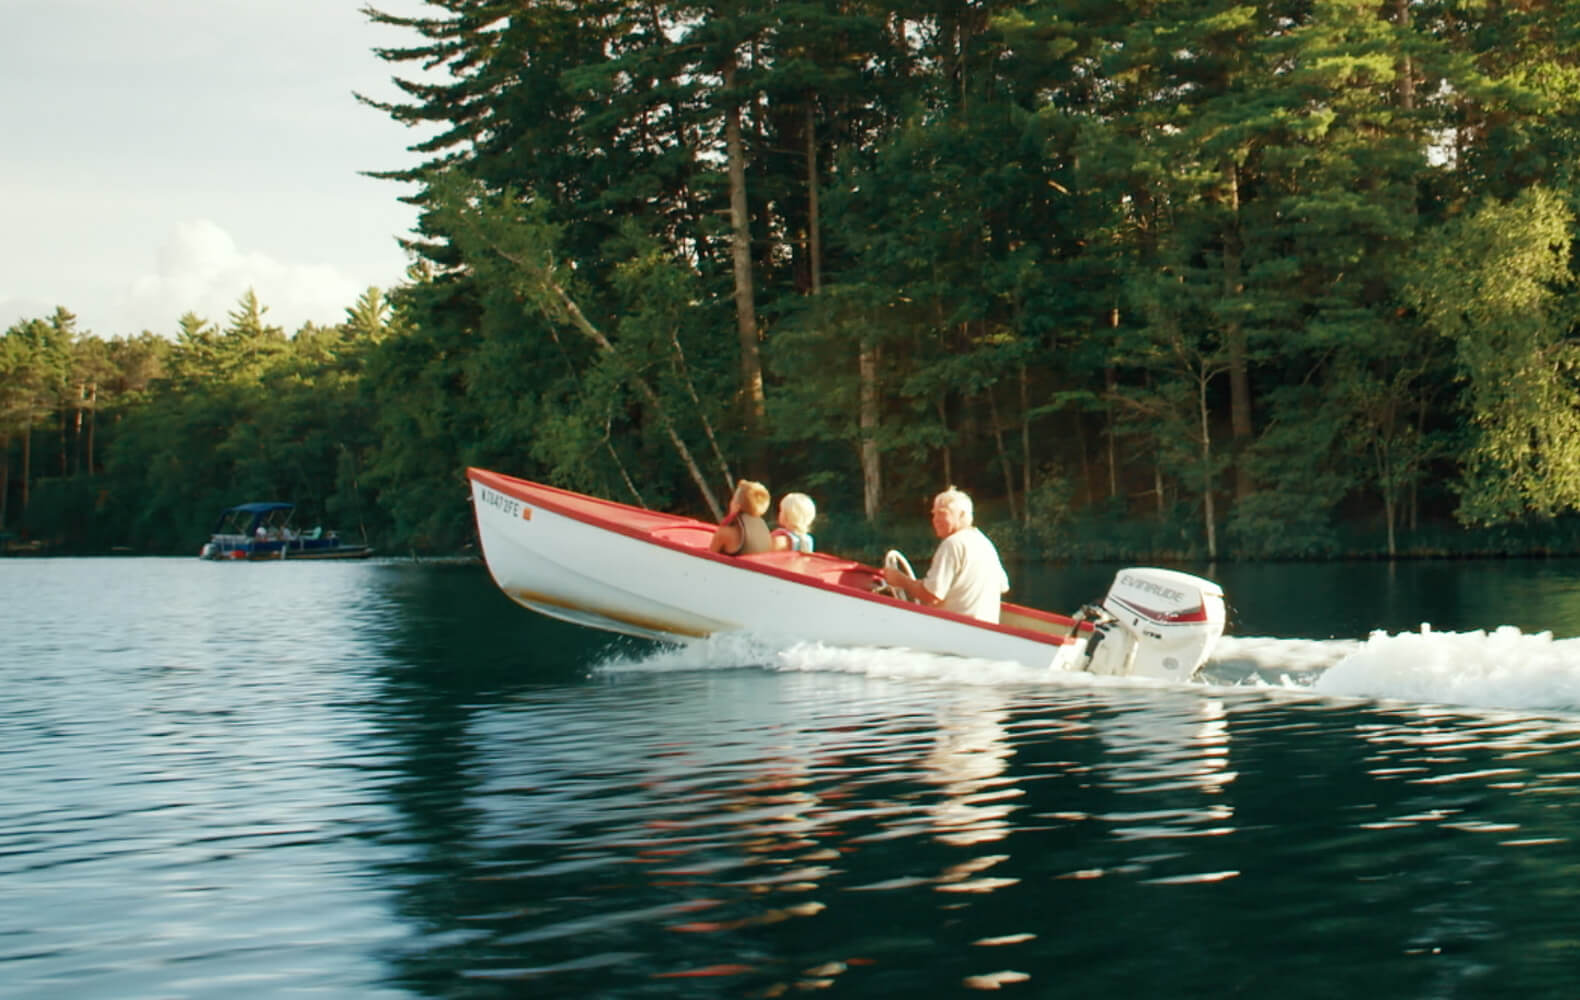 family on boat in lake